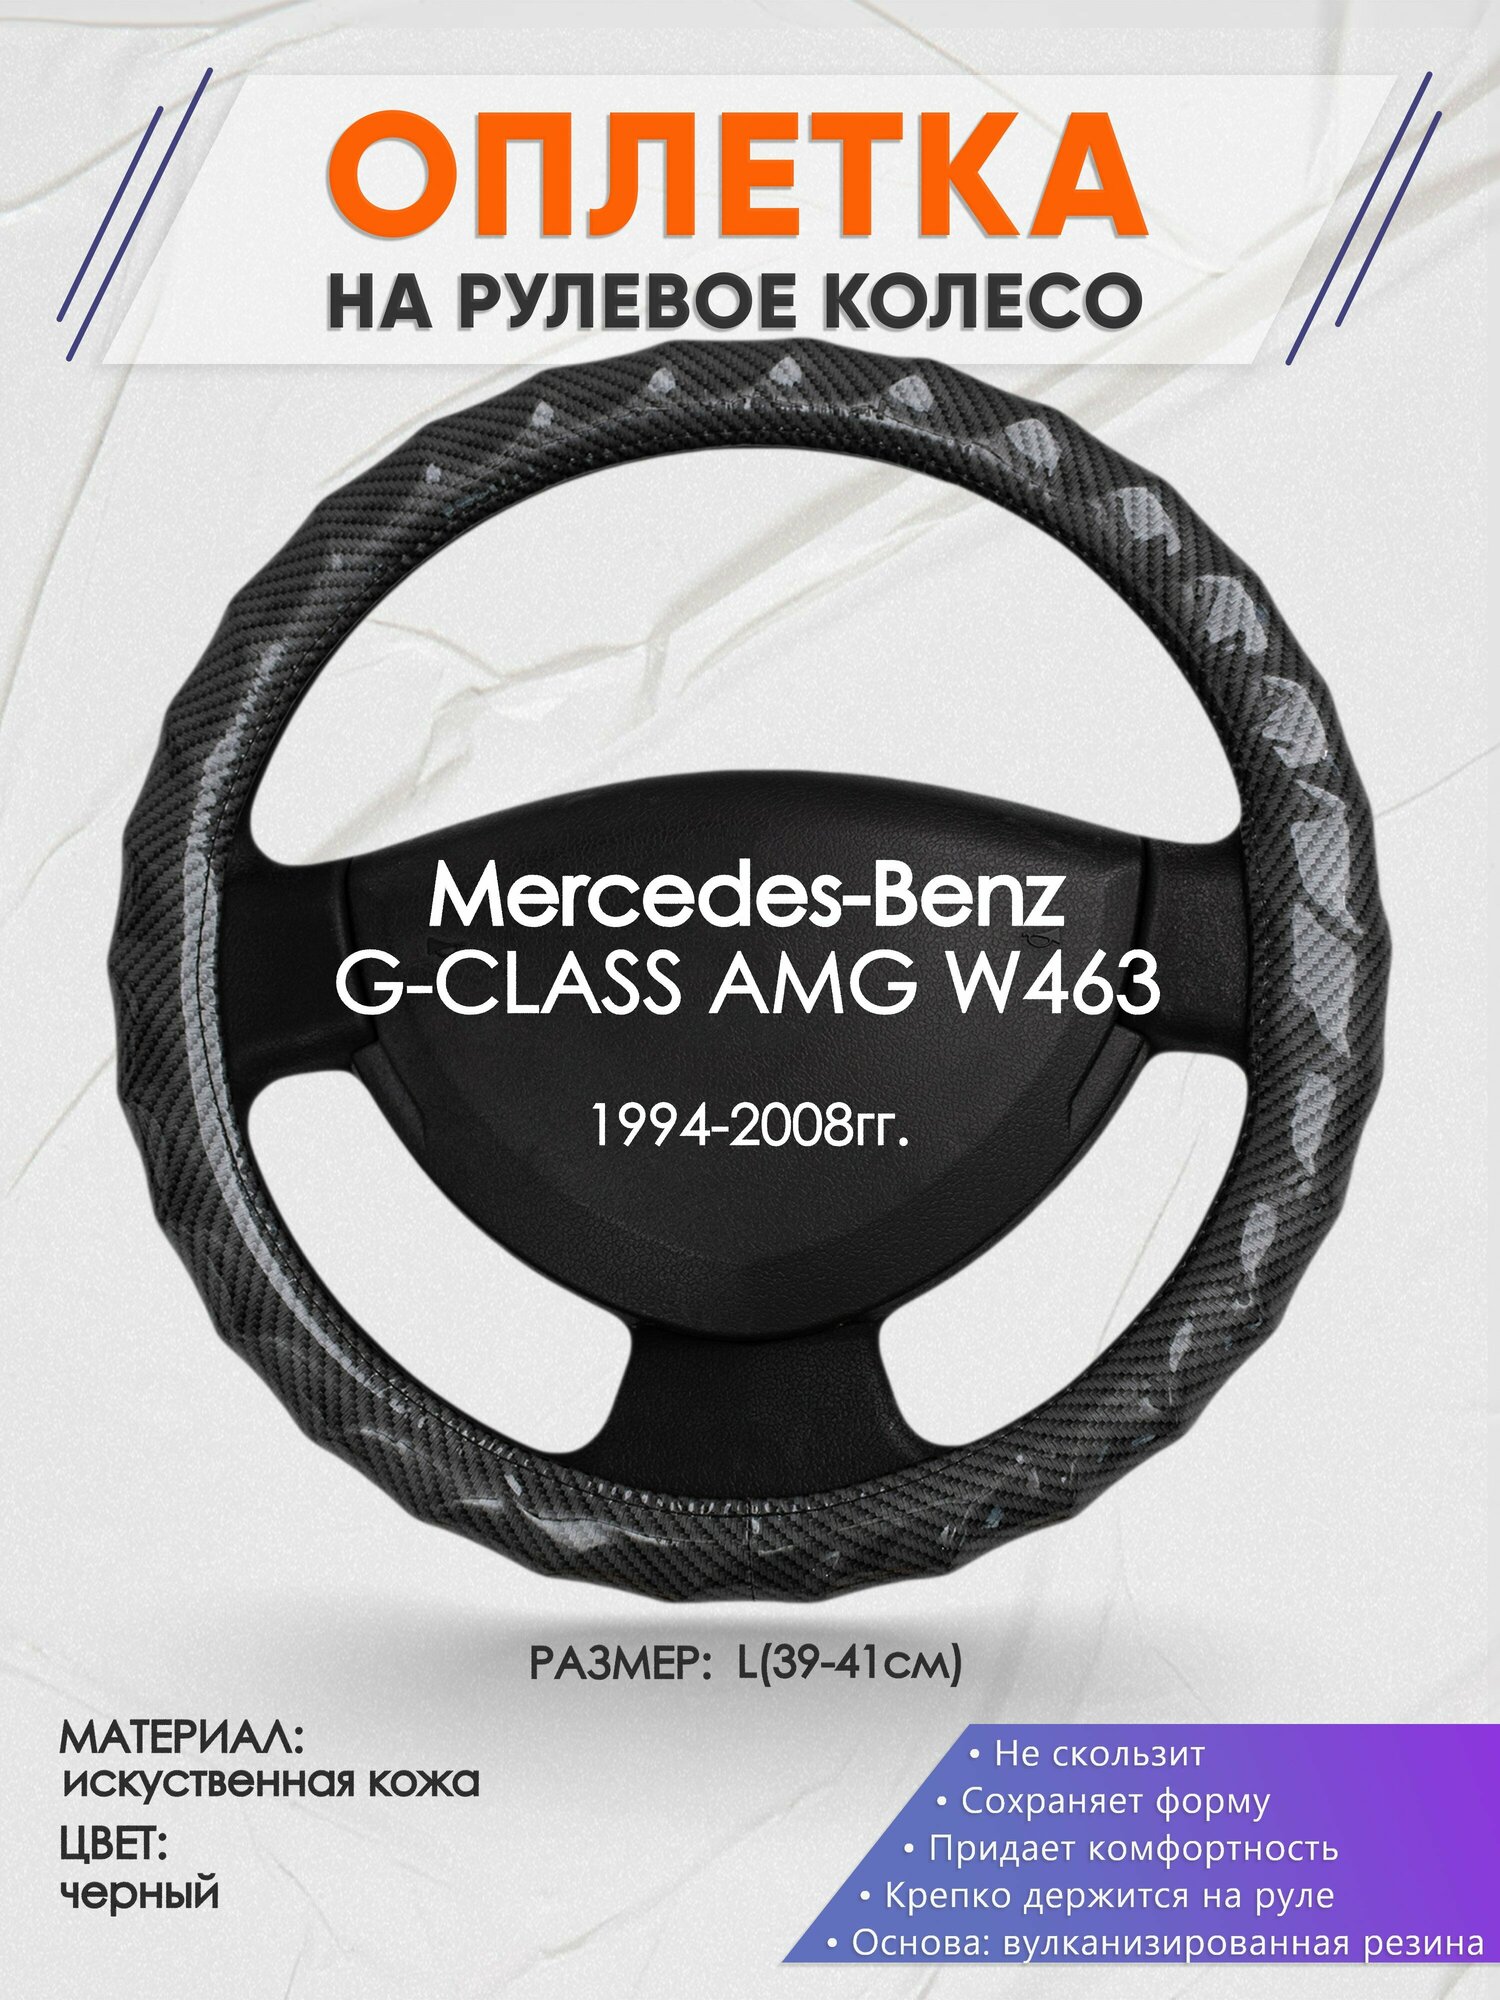 Оплетка на руль для Mercedes-Benz G-CLASS AMG W463(Мерседес Бенц Г Класс) 1994-2008, L(39-41см), Искусственная кожа 15